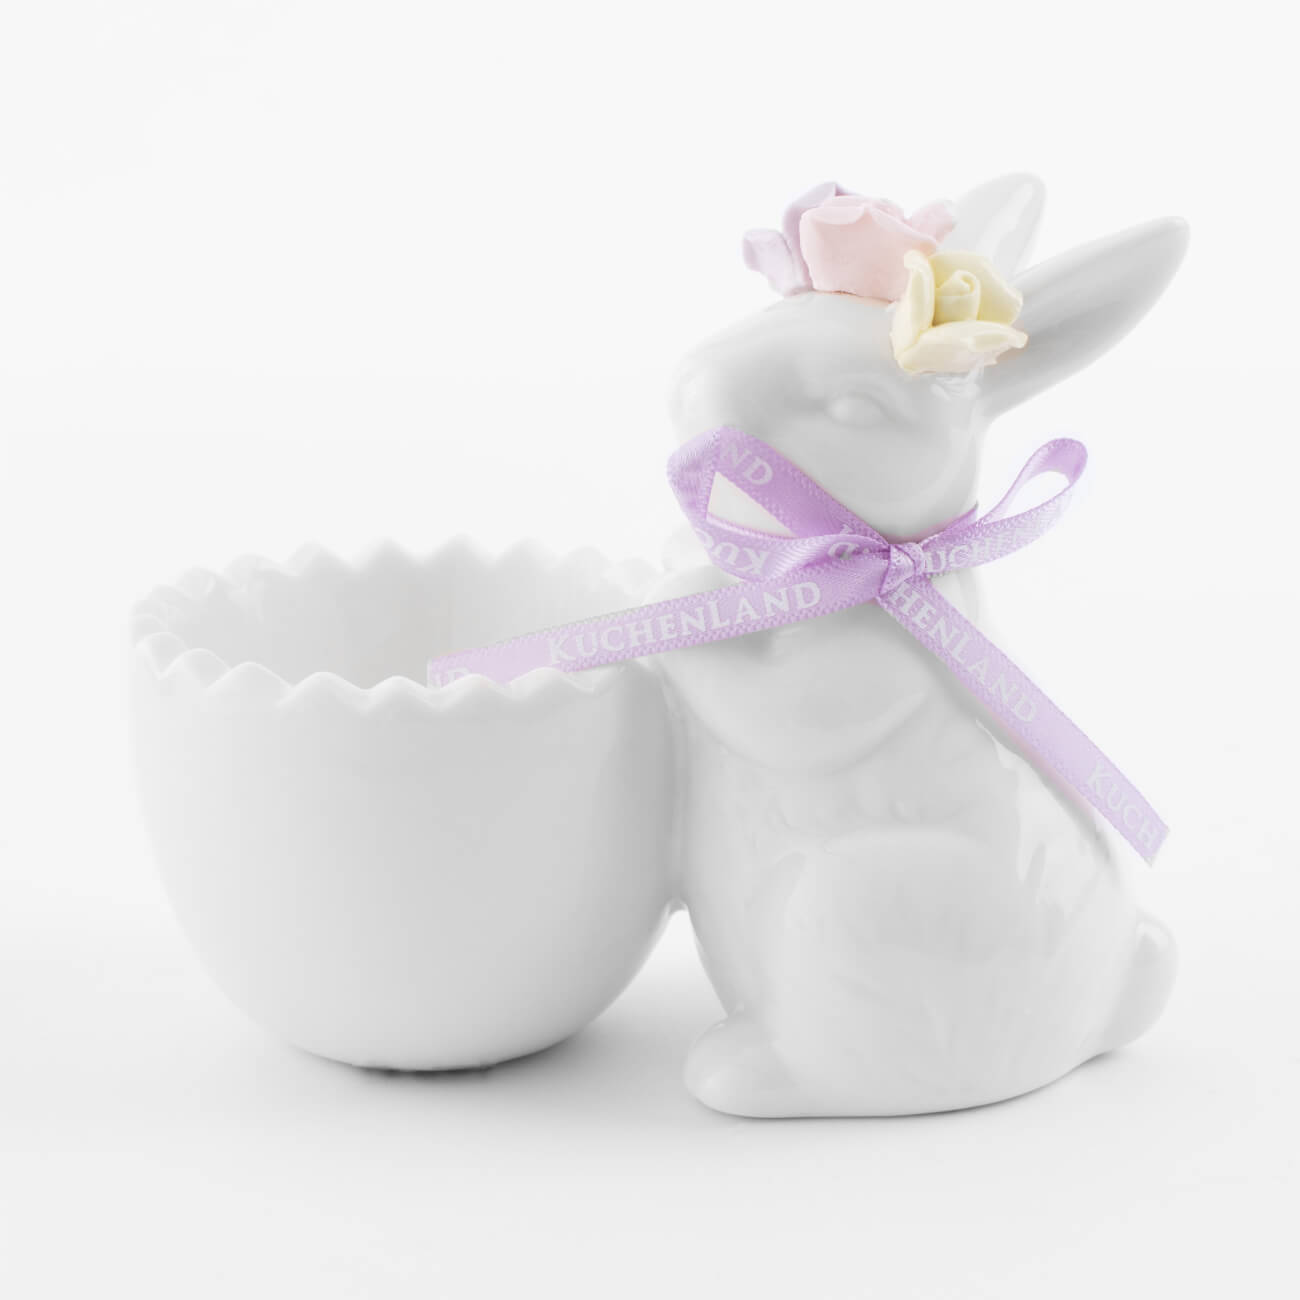 Подставка для яйца, 11 см, фарфор P, белая, Кролик в цветочном венке, Pure Easter подставка для зубной щетки 4 см фарфор р молочная minito